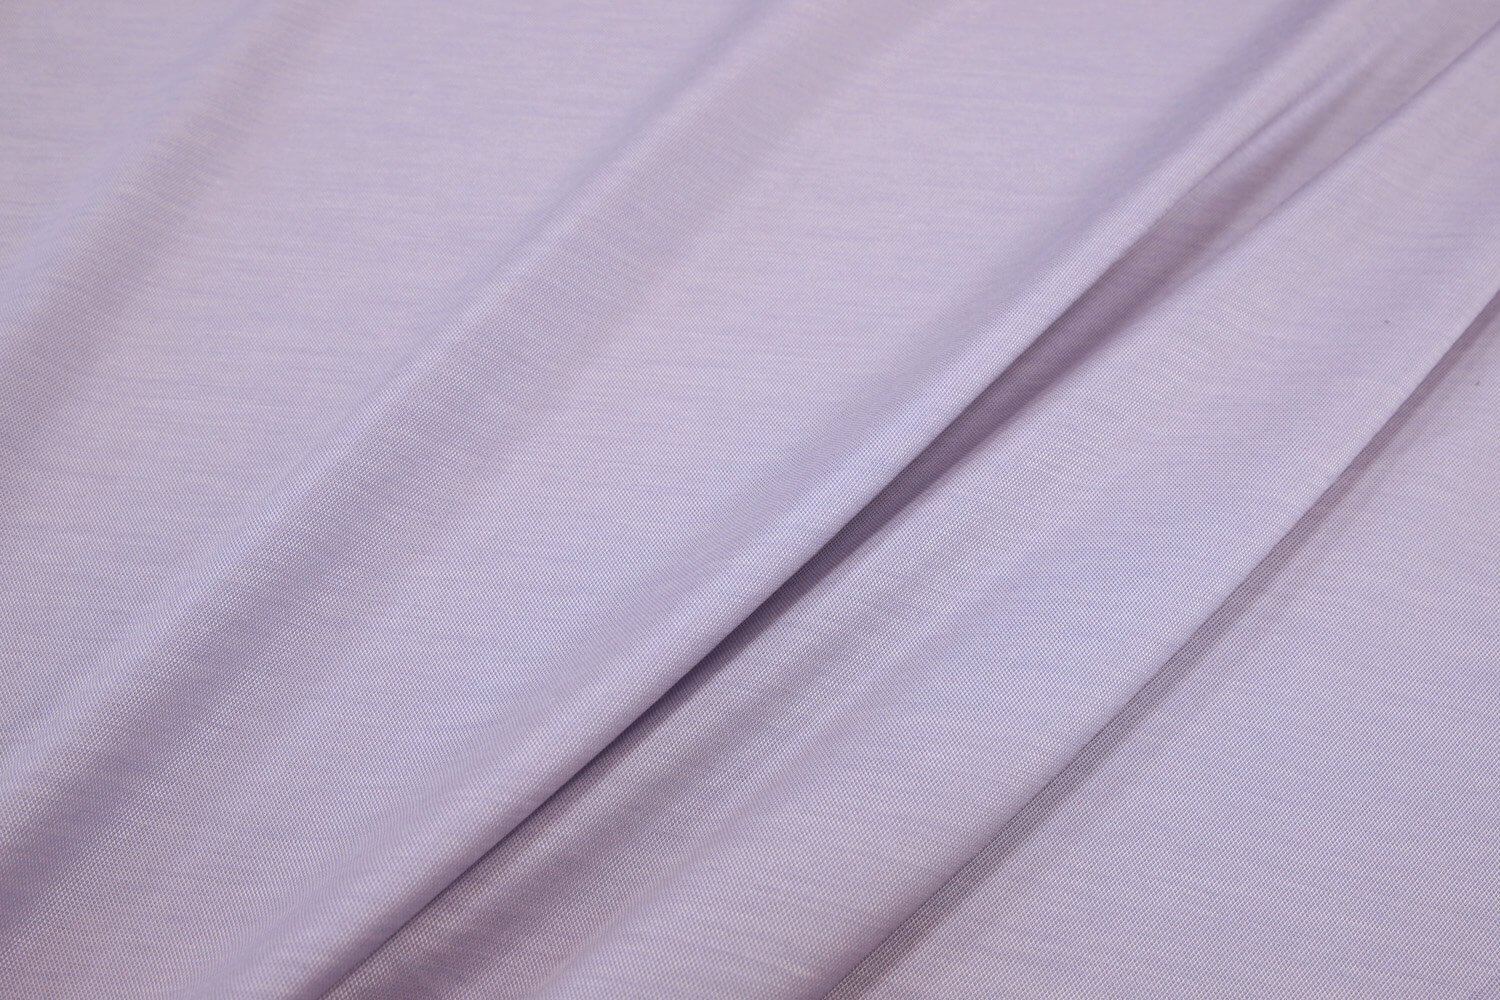 Шелковый трикотаж пике Loro Piana, цвет Фиолетовый